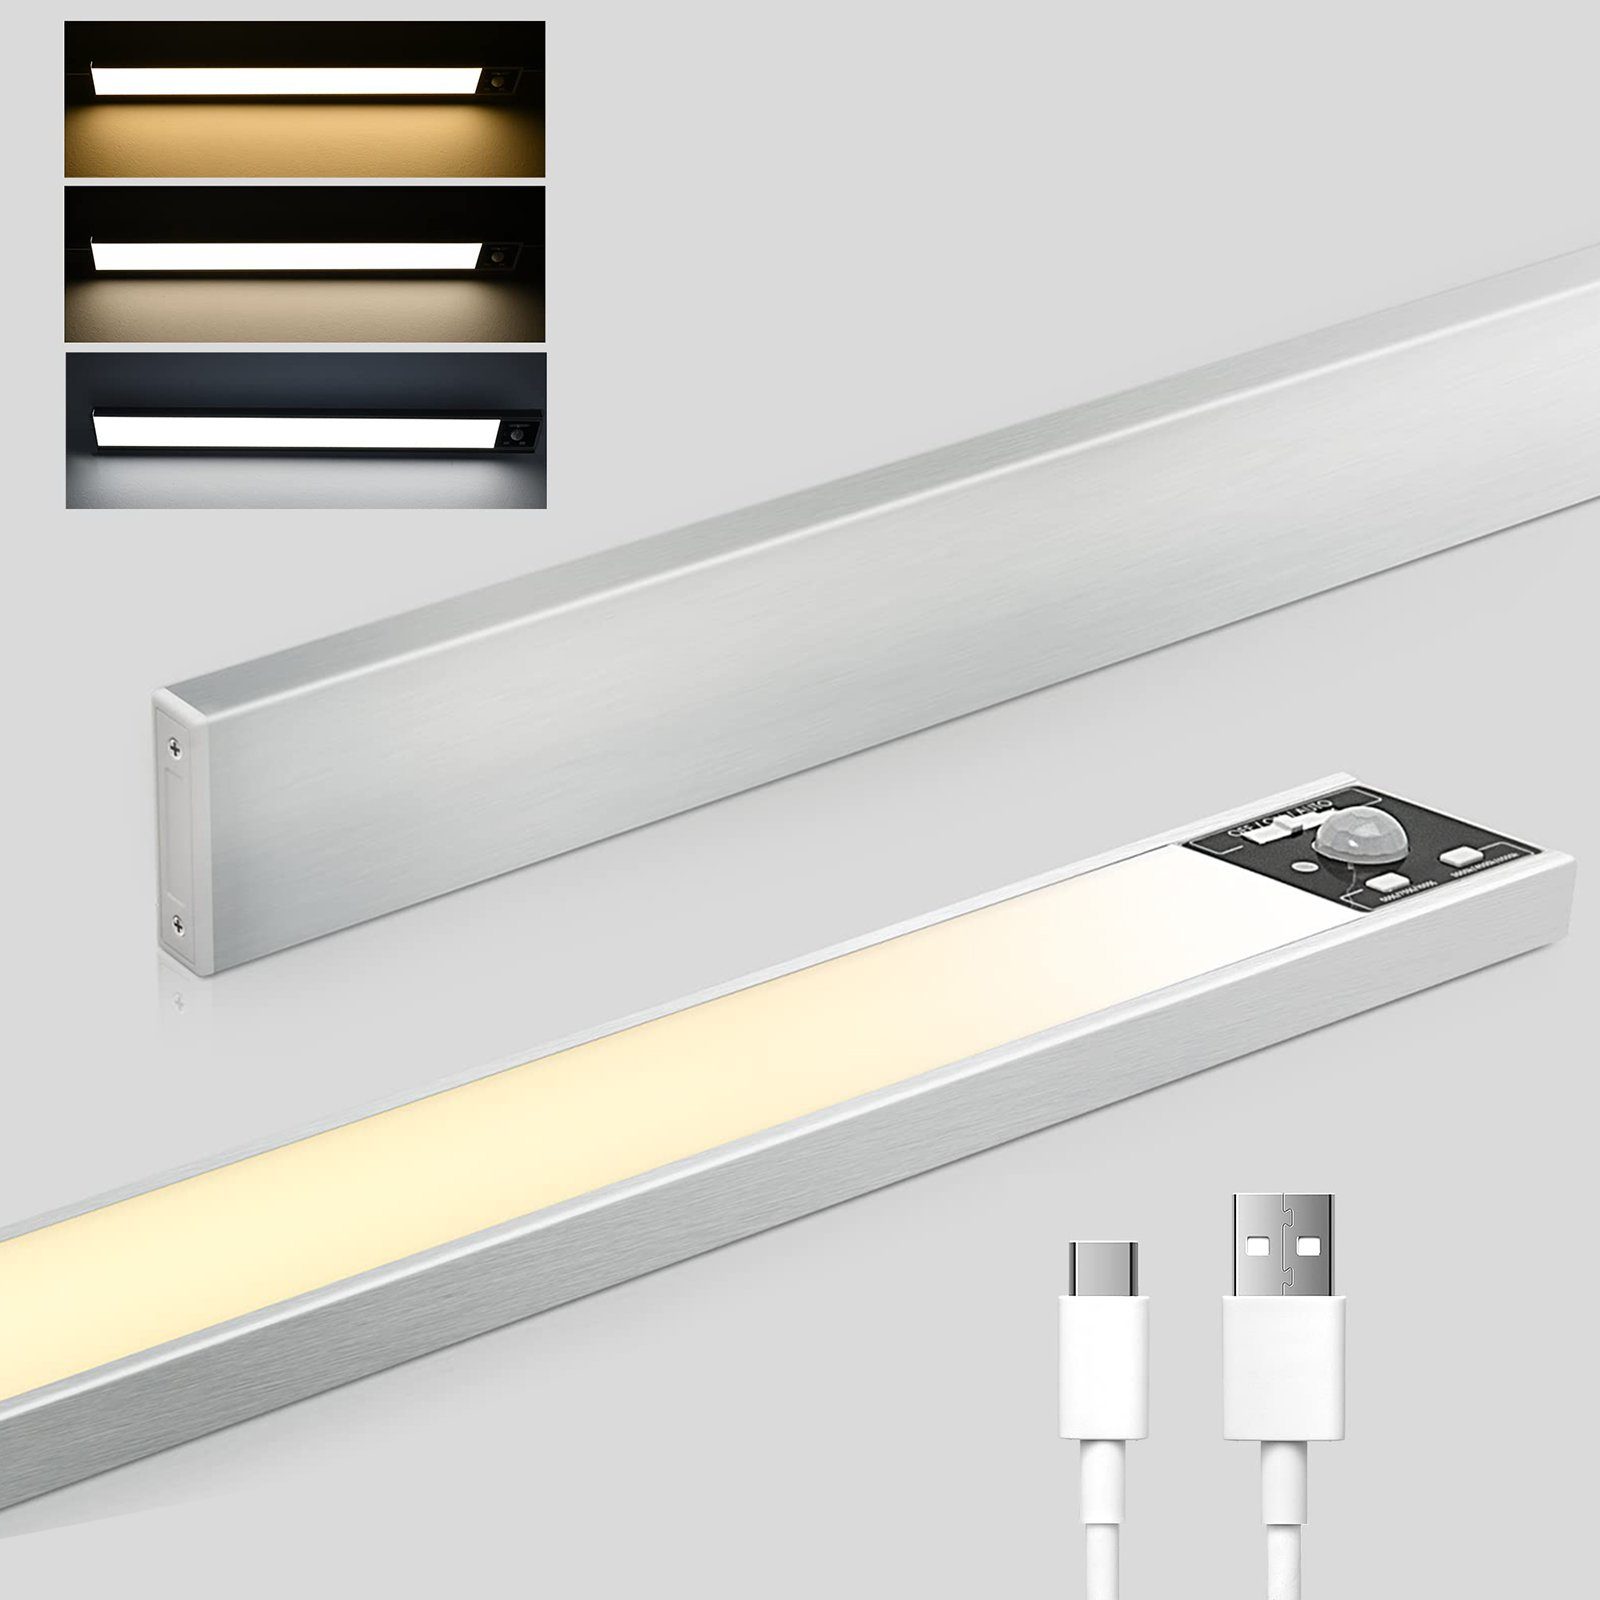 Rosnek LED Lichtleiste Dimmbar, Wiederaufladbar, Bewegungssensor, für Küchenschrank, Warmes Licht (3000K), natürliches Licht (4500K) und weißes Licht (6500K), 3 Farben, USB, Treppe Deko